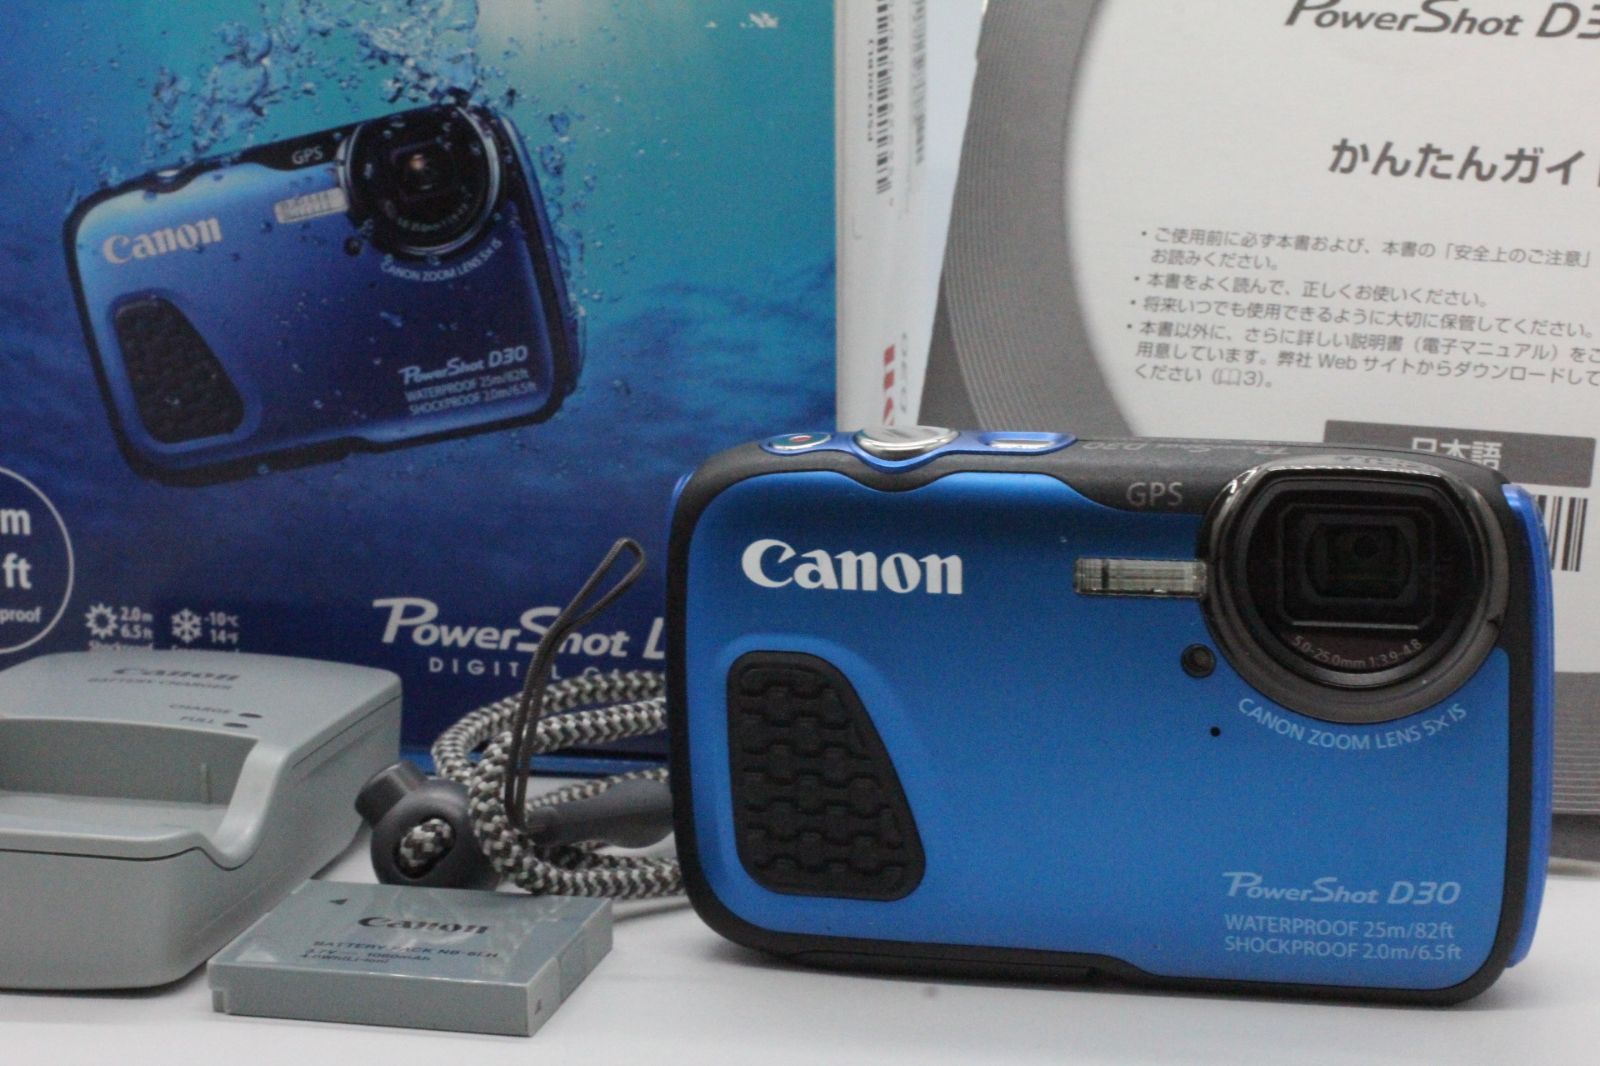 キヤノン Canon Power Shot D30 光学5倍ズームスマホ/家電/カメラ - コンパクトデジタルカメラ